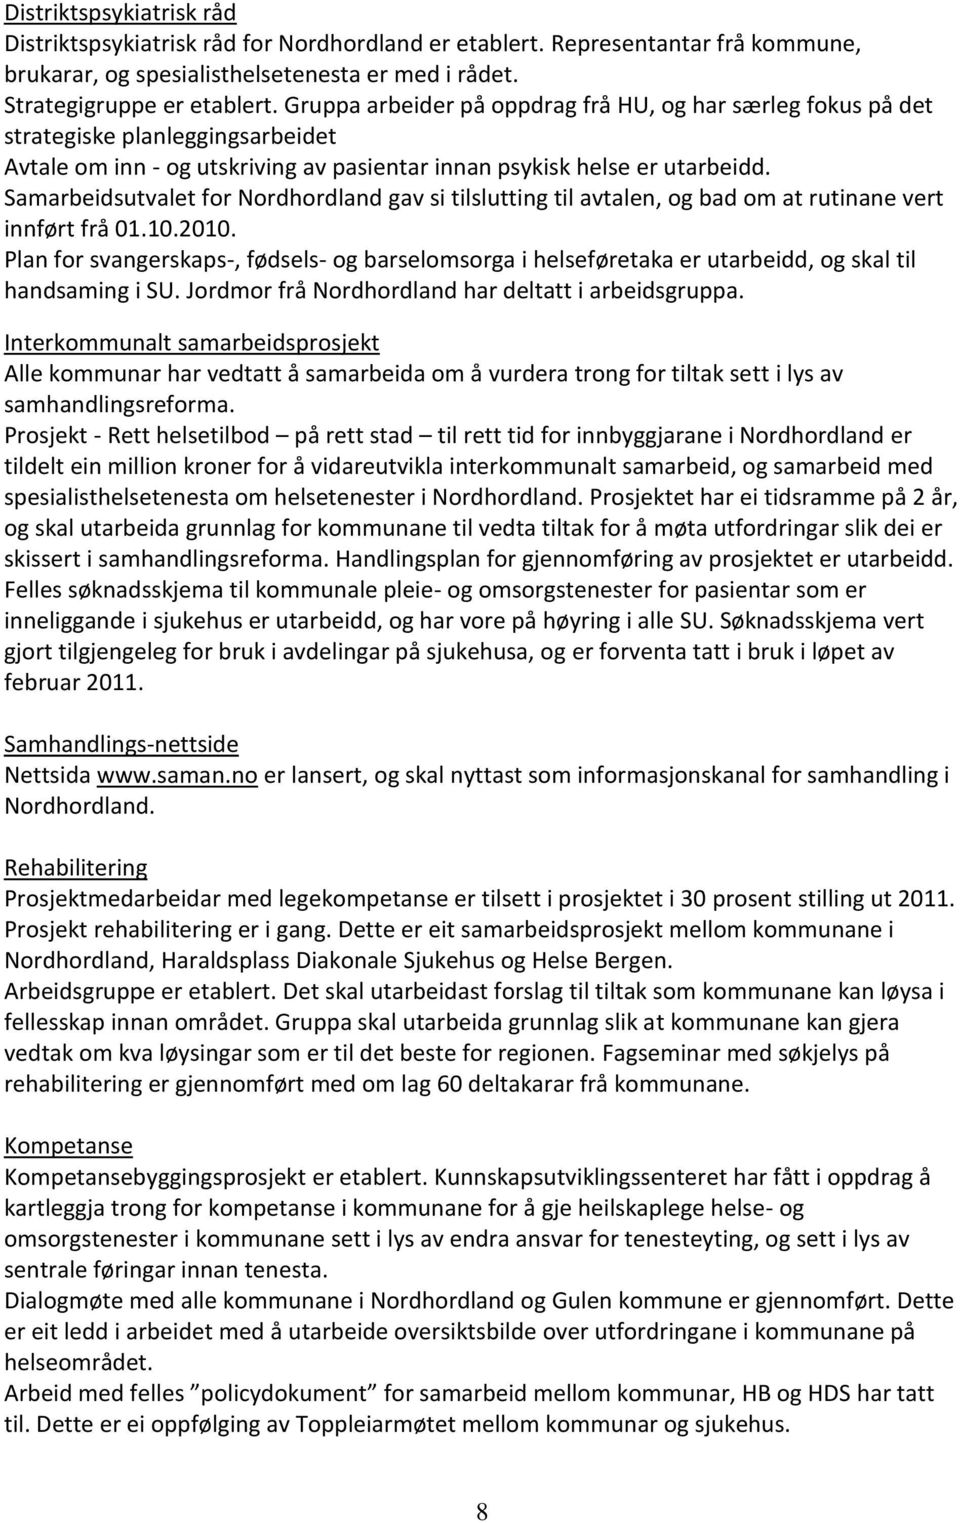 Samarbeidsutvalet for Nordhordland gav si tilslutting til avtalen, og bad om at rutinane vert innført frå 01.10.2010.